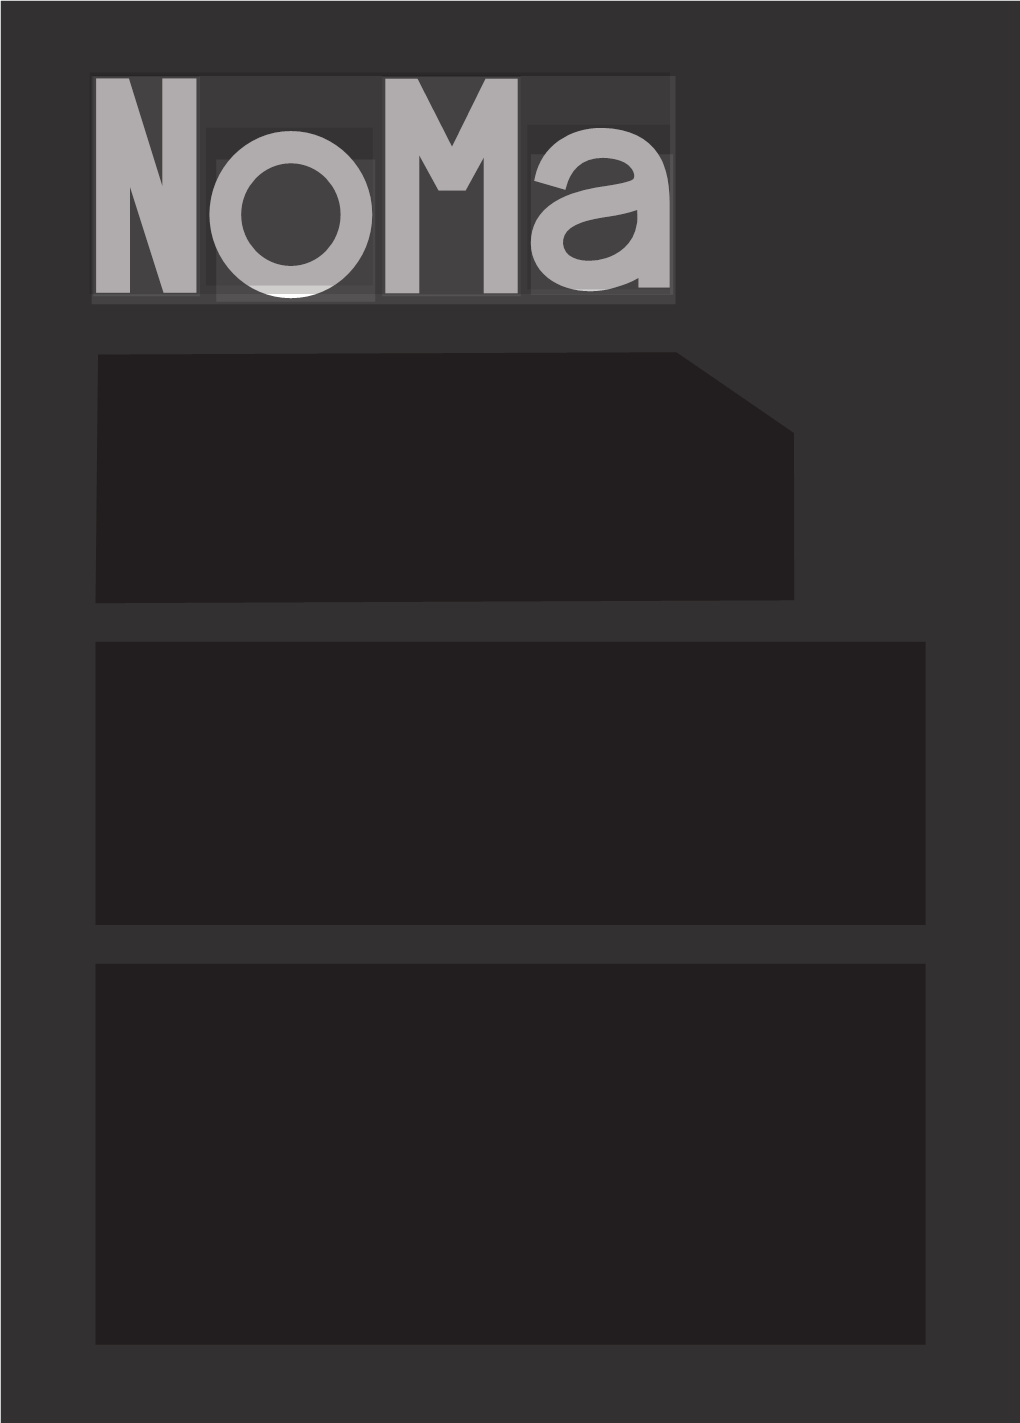 Noma-Ebrochure-90261759